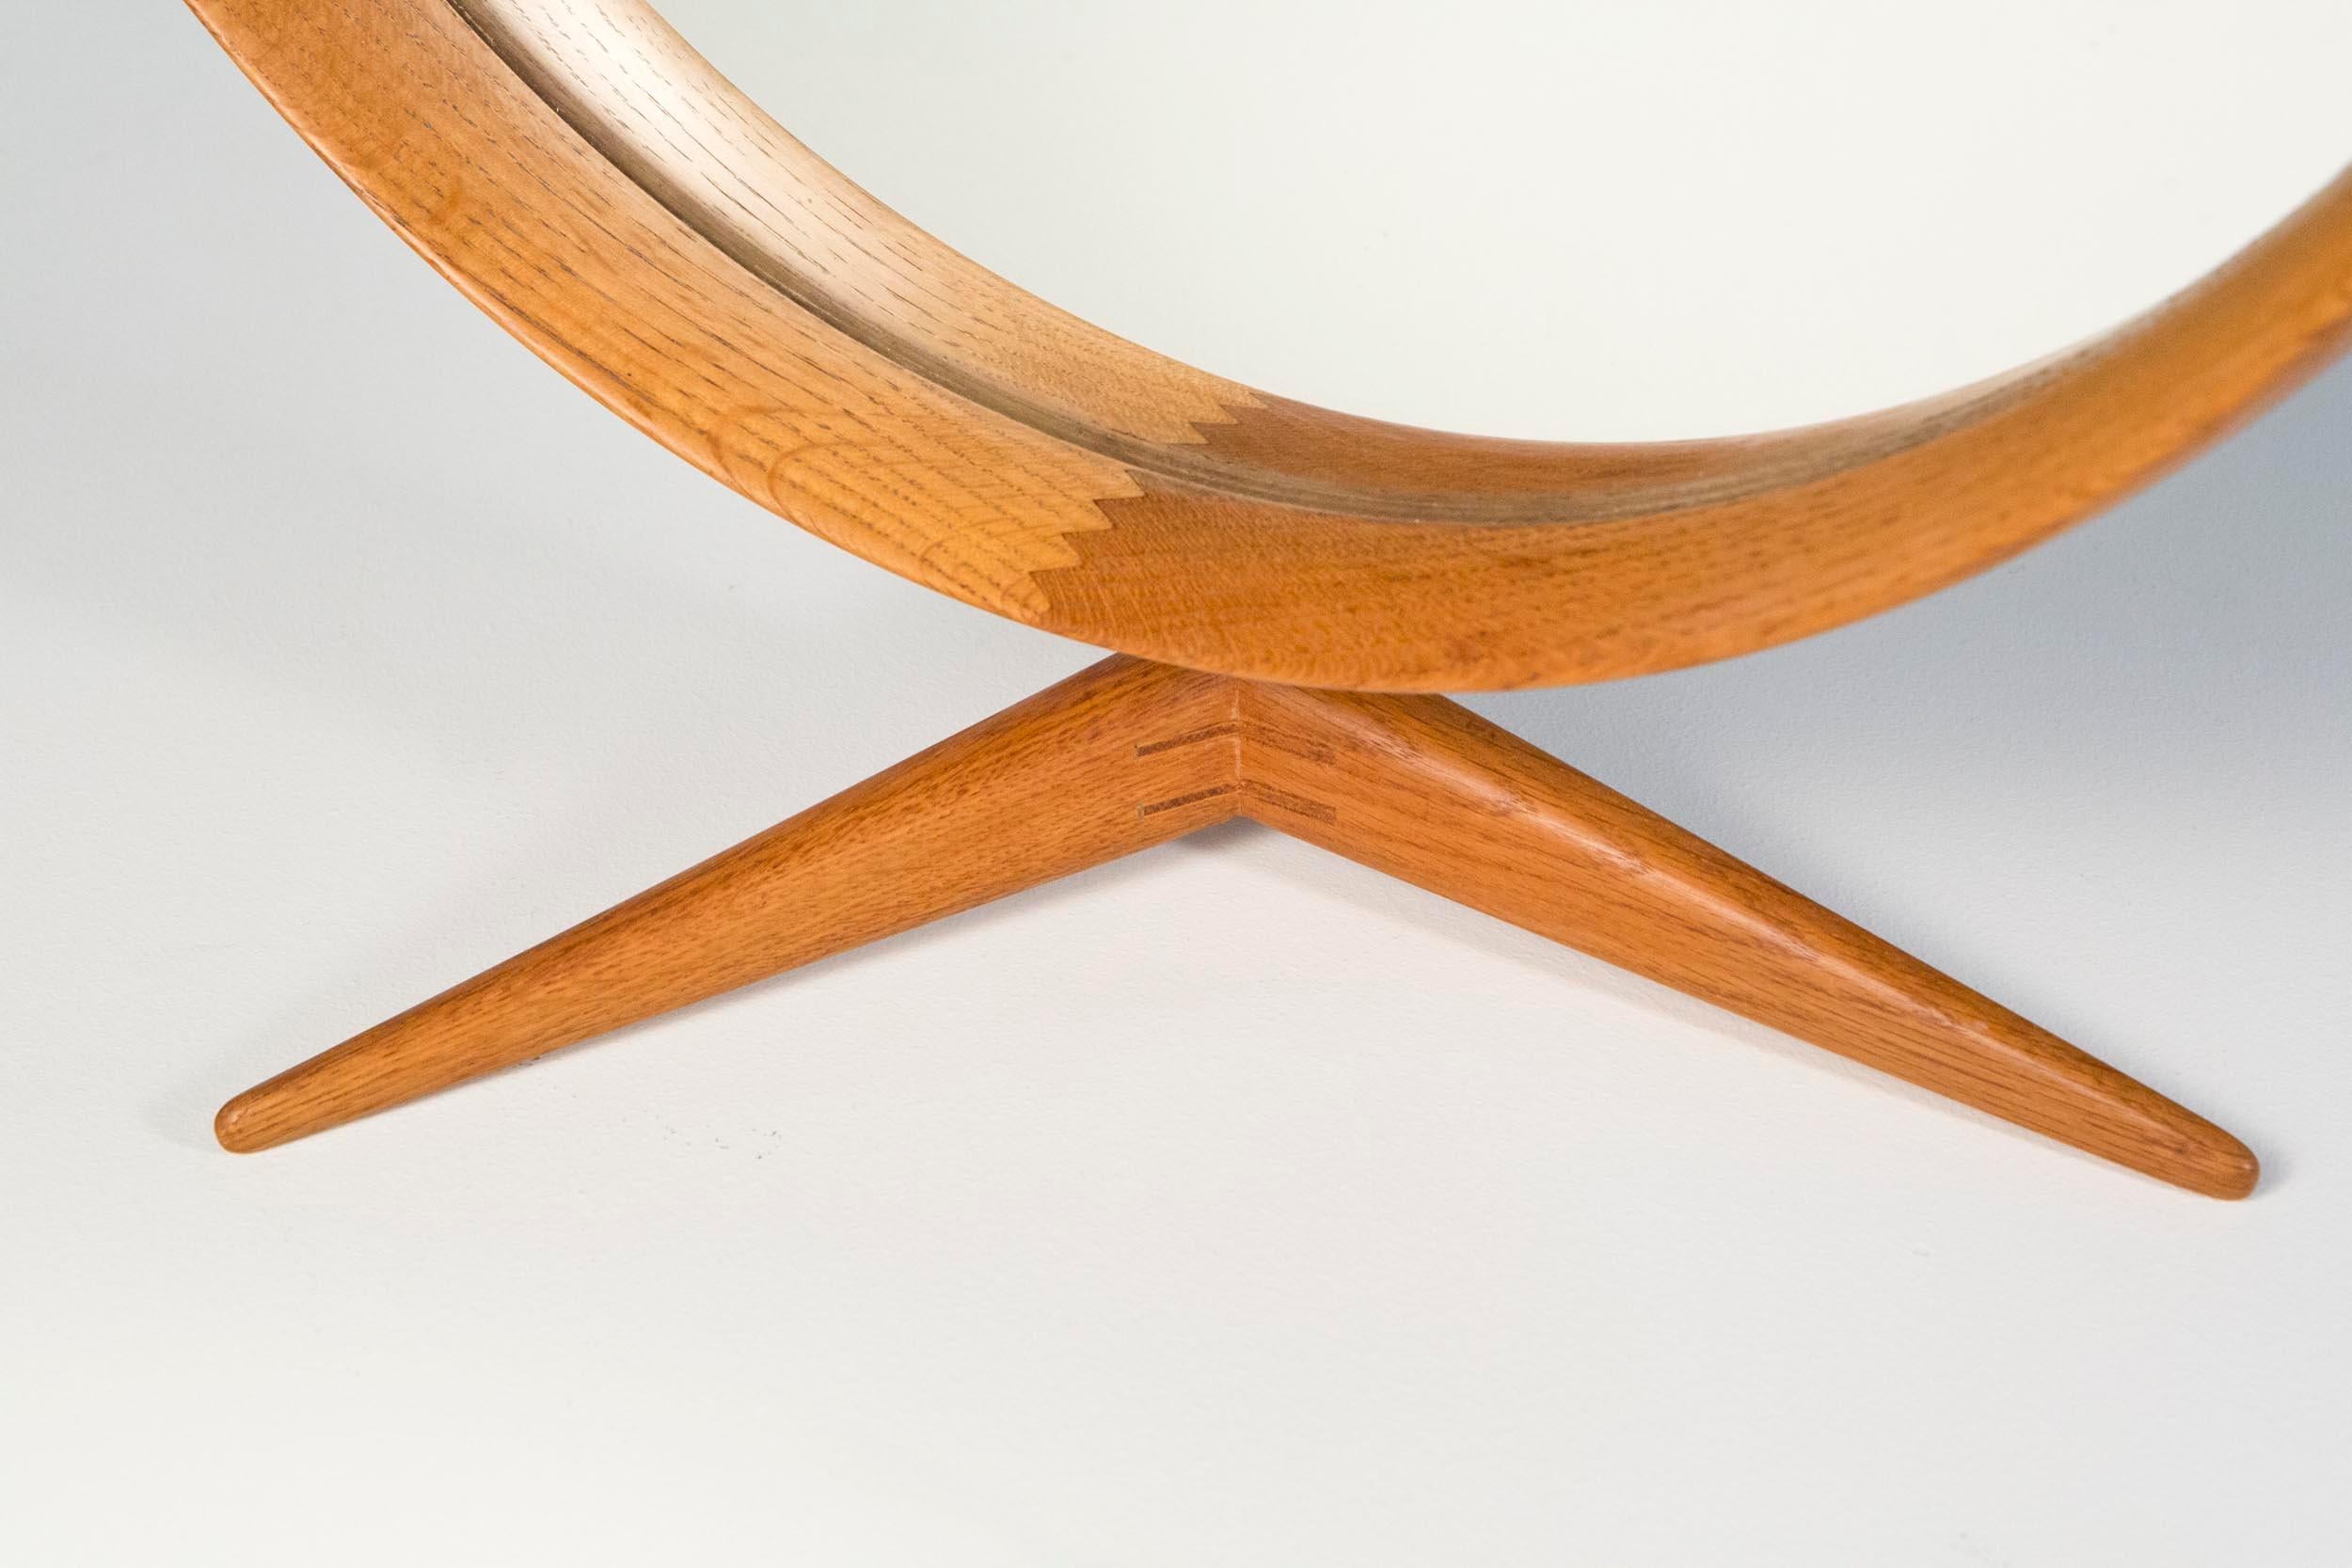 Uno & Östen Kristiansson Tischspiegel aus Eiche Modell 406 von Luxus, Schweden, 1960er Jahre.

Dieser große gerahmte Tischspiegel aus Eichenholz wird auf einem Holzständer balanciert, der sich auf einem verstellbaren Eichenholzrahmen dreht.